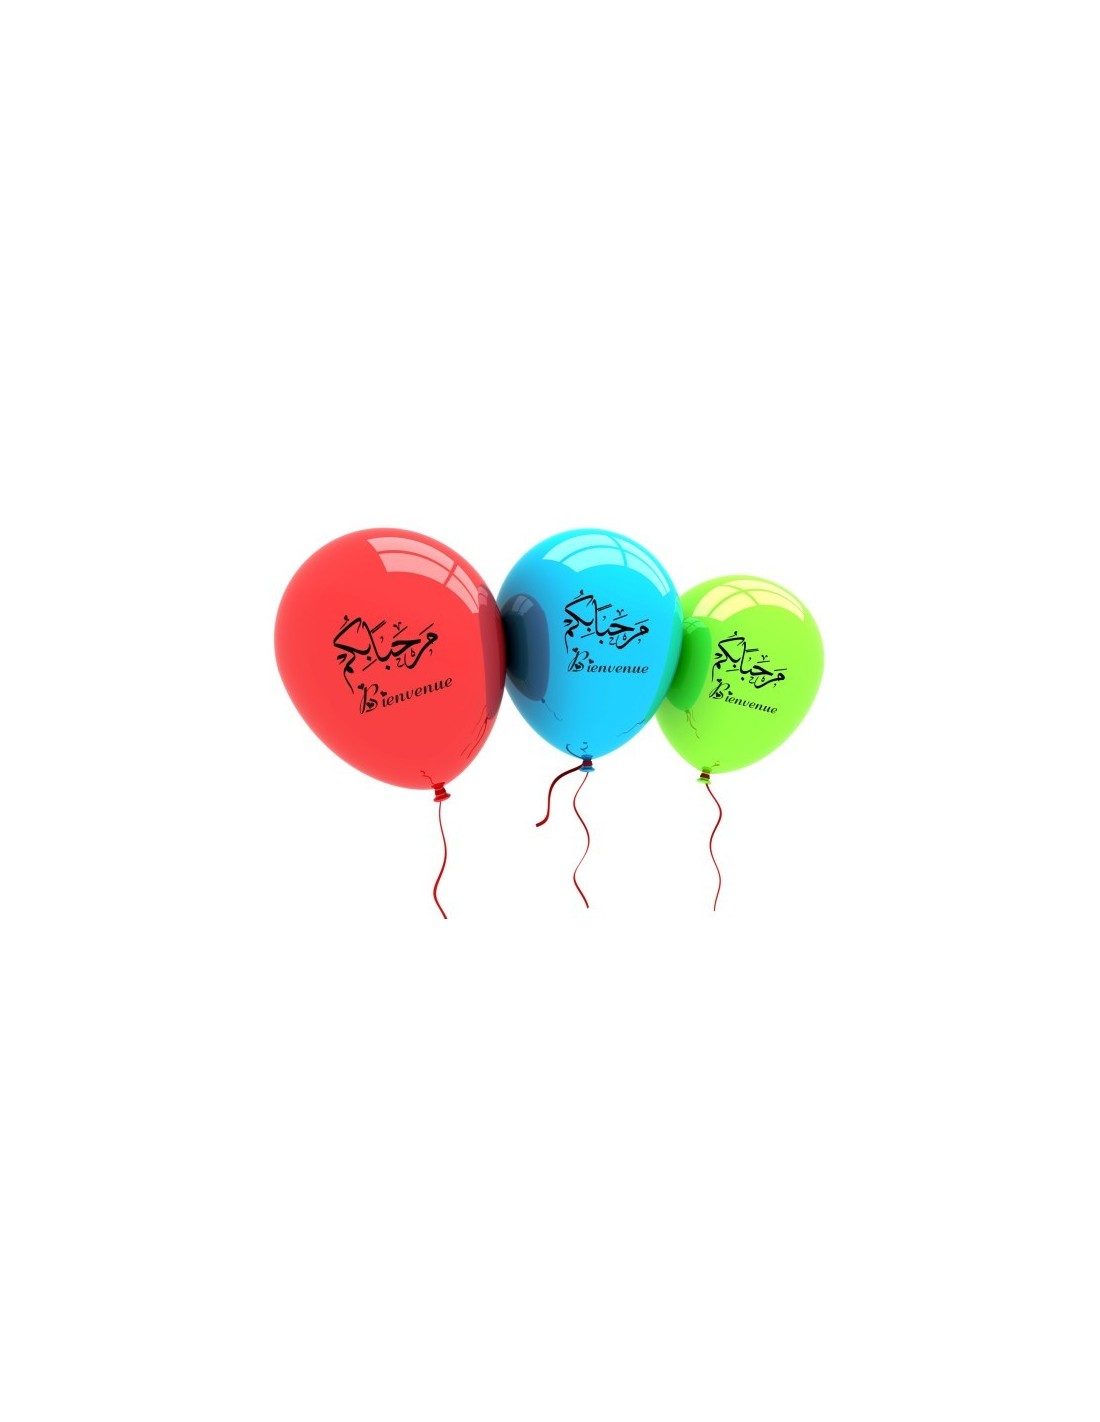 10 Ballons Bienvenue, Marhaban Bikum